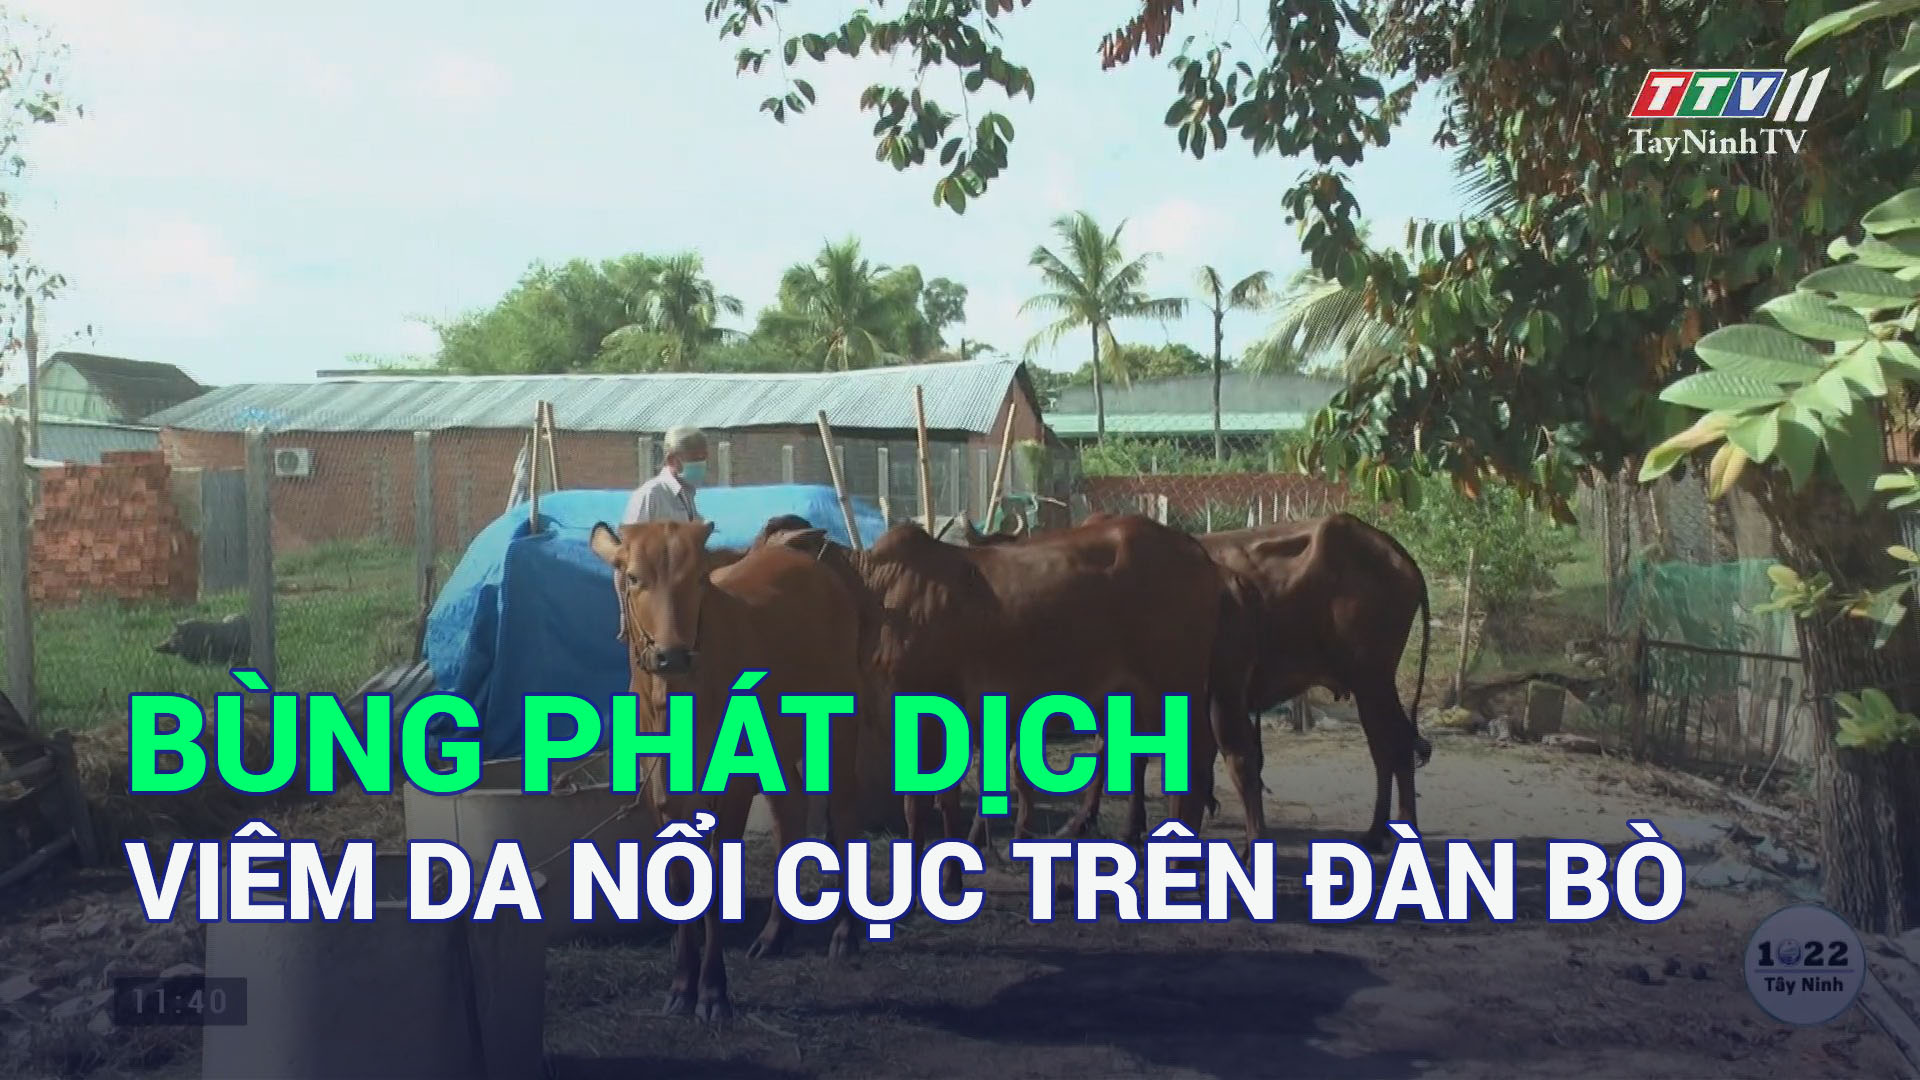 Bùng phát dịch viêm da nổi cục trên đàn bò | TayNinhTV